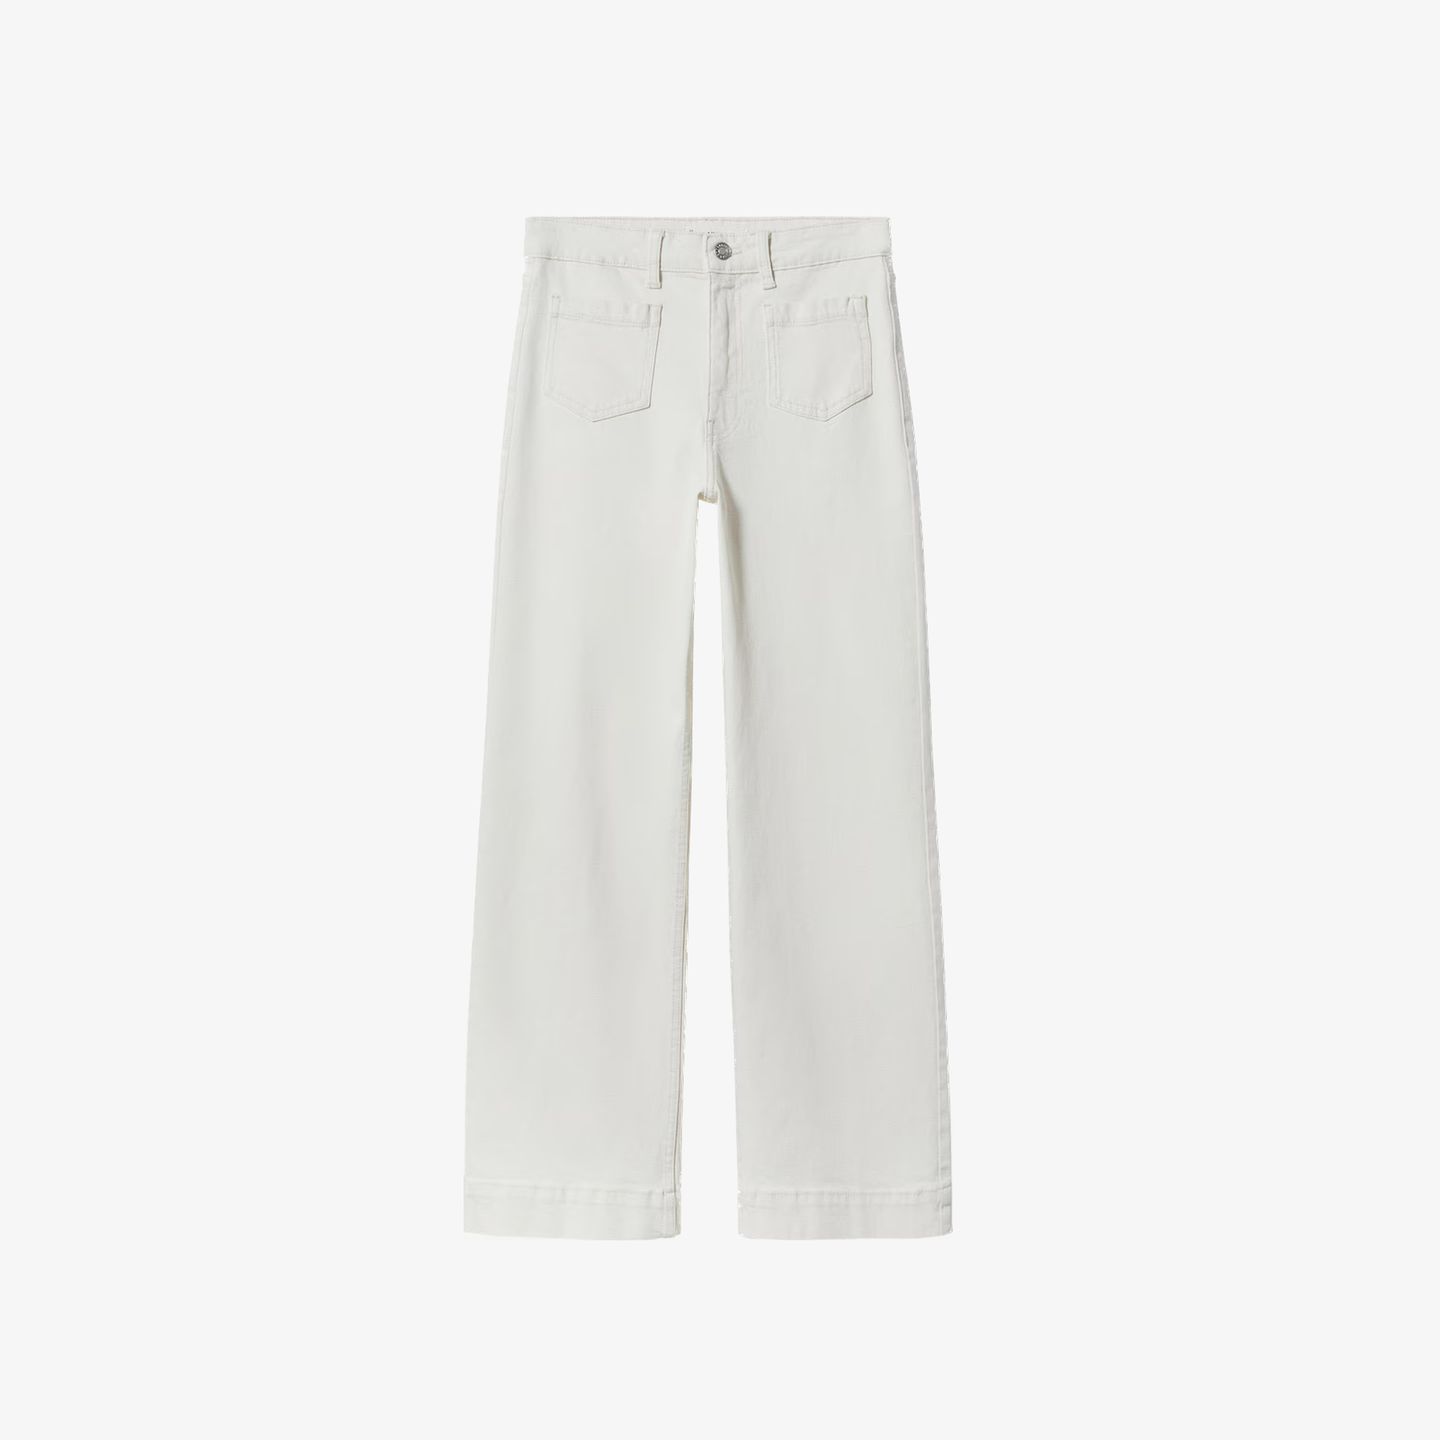 Diese Flared Jeans verfügt, genau wie die Hose am Model in Paris, über präsente Fronttaschen und Ton-in-Ton-Nähte. Der knöchelfreie Schnitt wirkt schön elegant und lässt auch etwas Luft ans Bein. Über Mango kostet sie etwa 48 Euro.